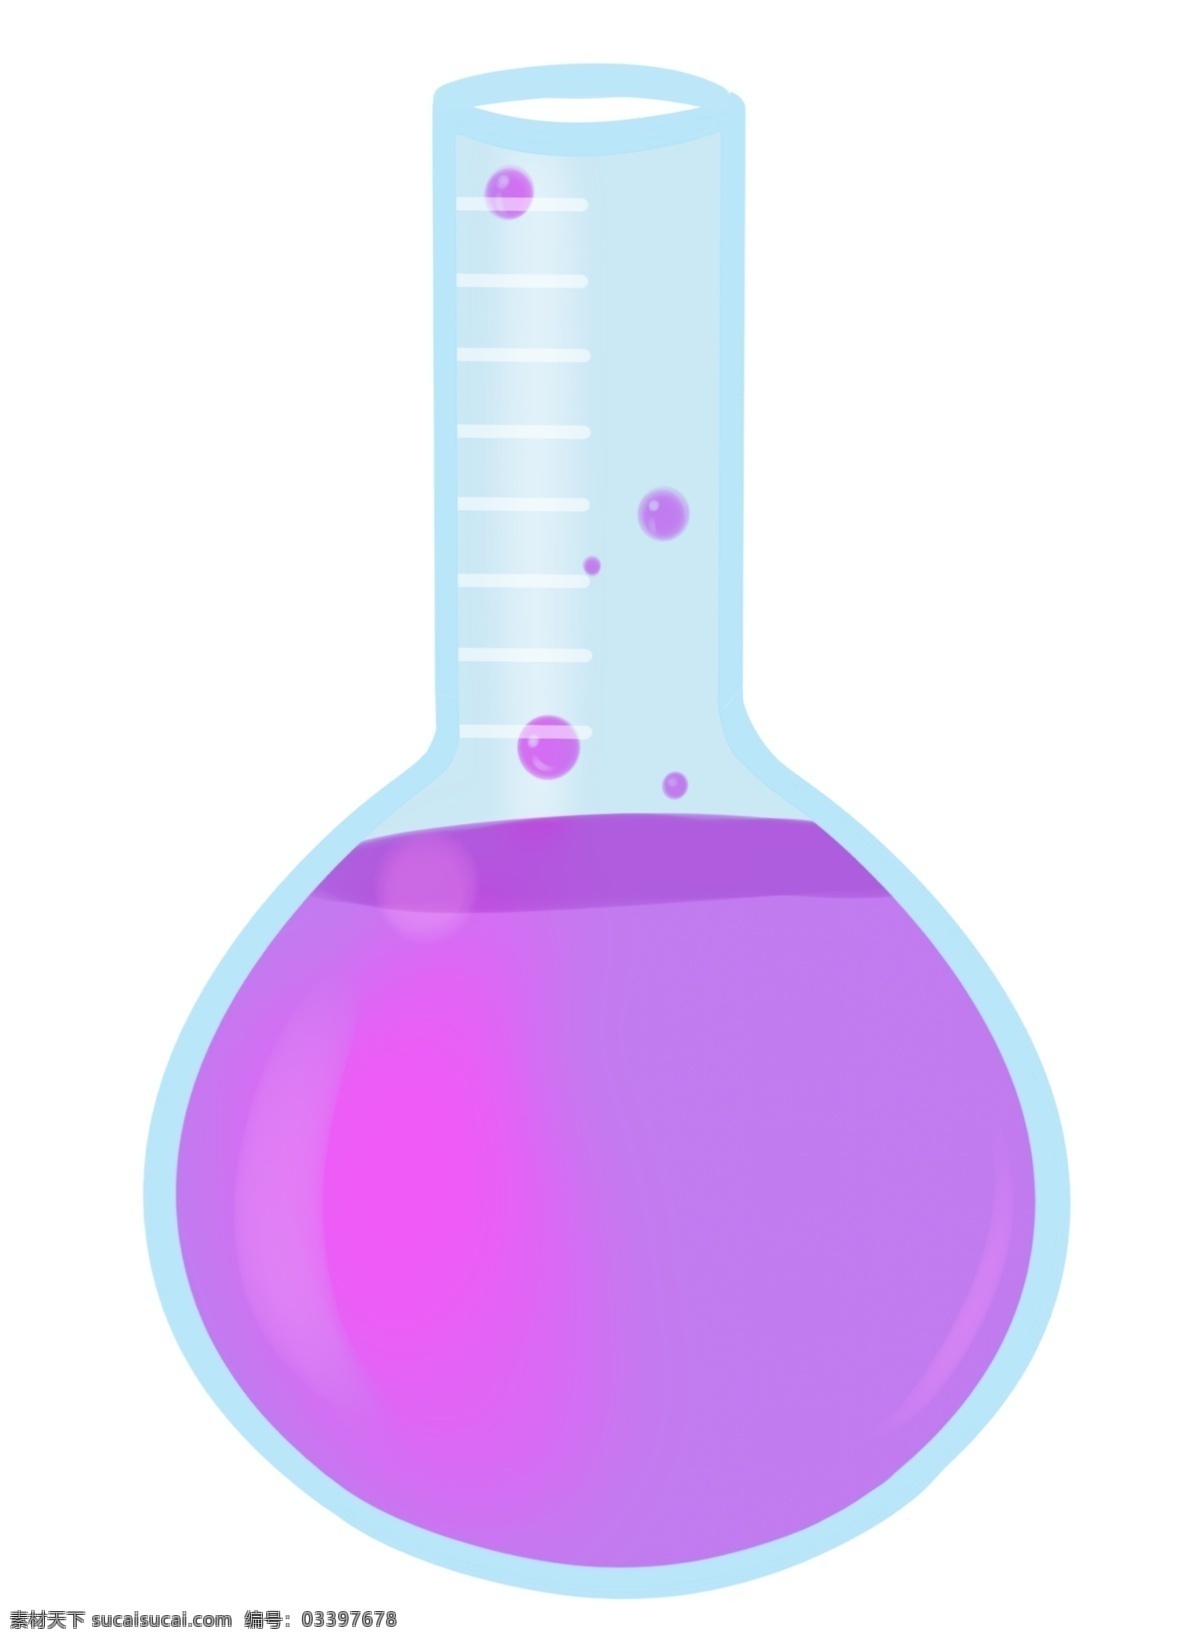 紫色 液体 蓝色 瓶子 蓝色瓶子 试管 玻璃瓶子 化学器皿 紫色液体 蓝色瓶子插图 化学药剂 药品插画